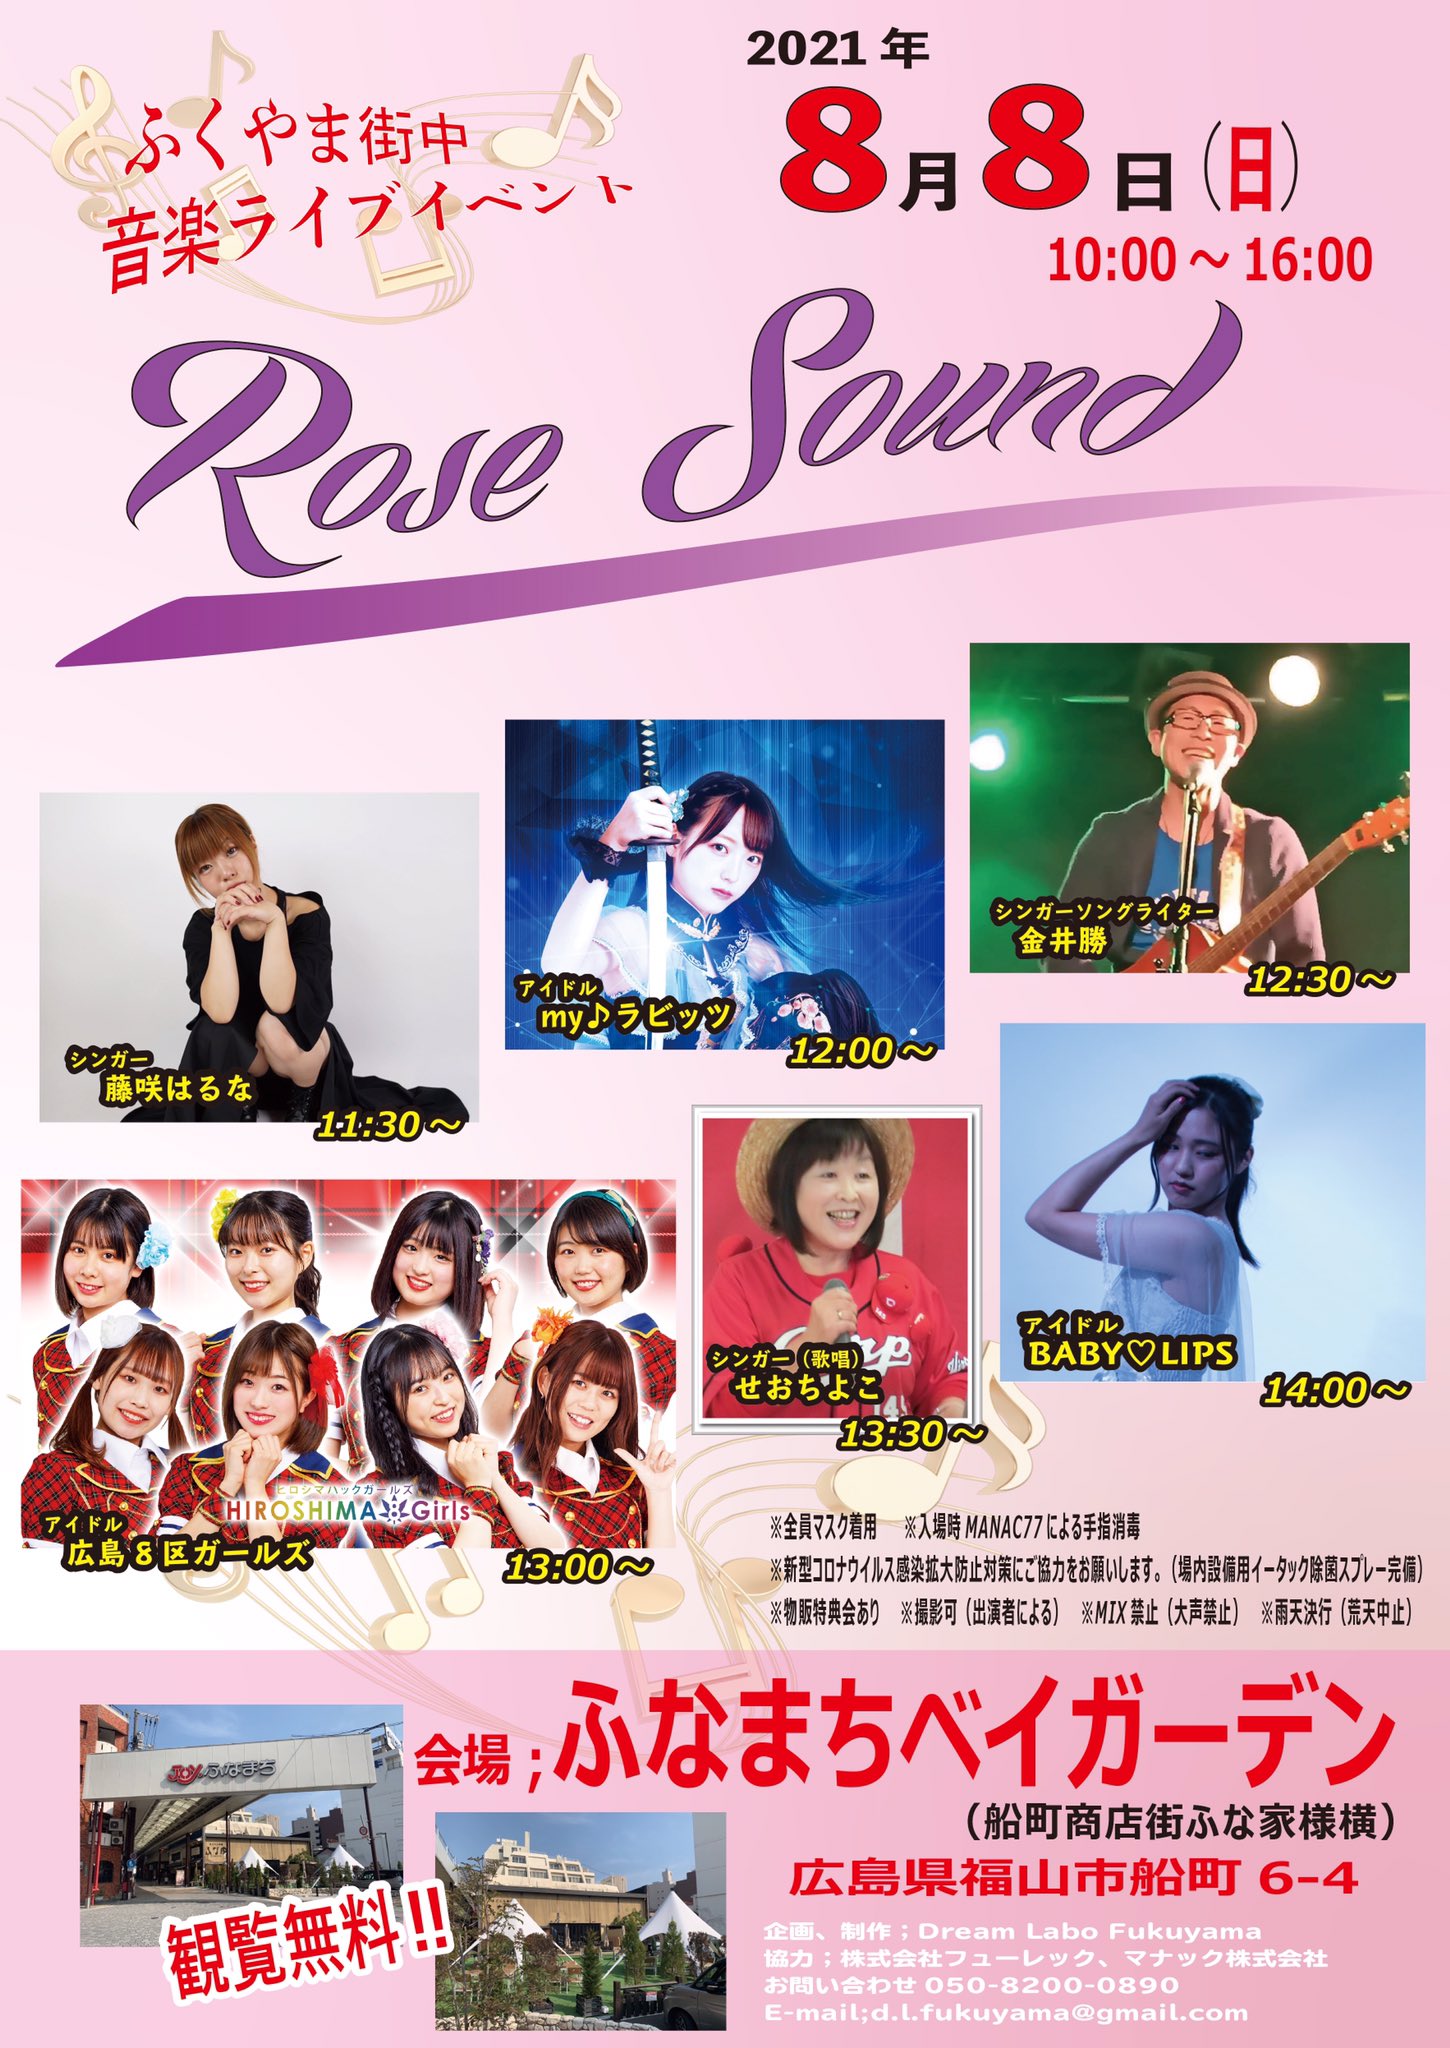 8月8日(日)「Rose Sound」